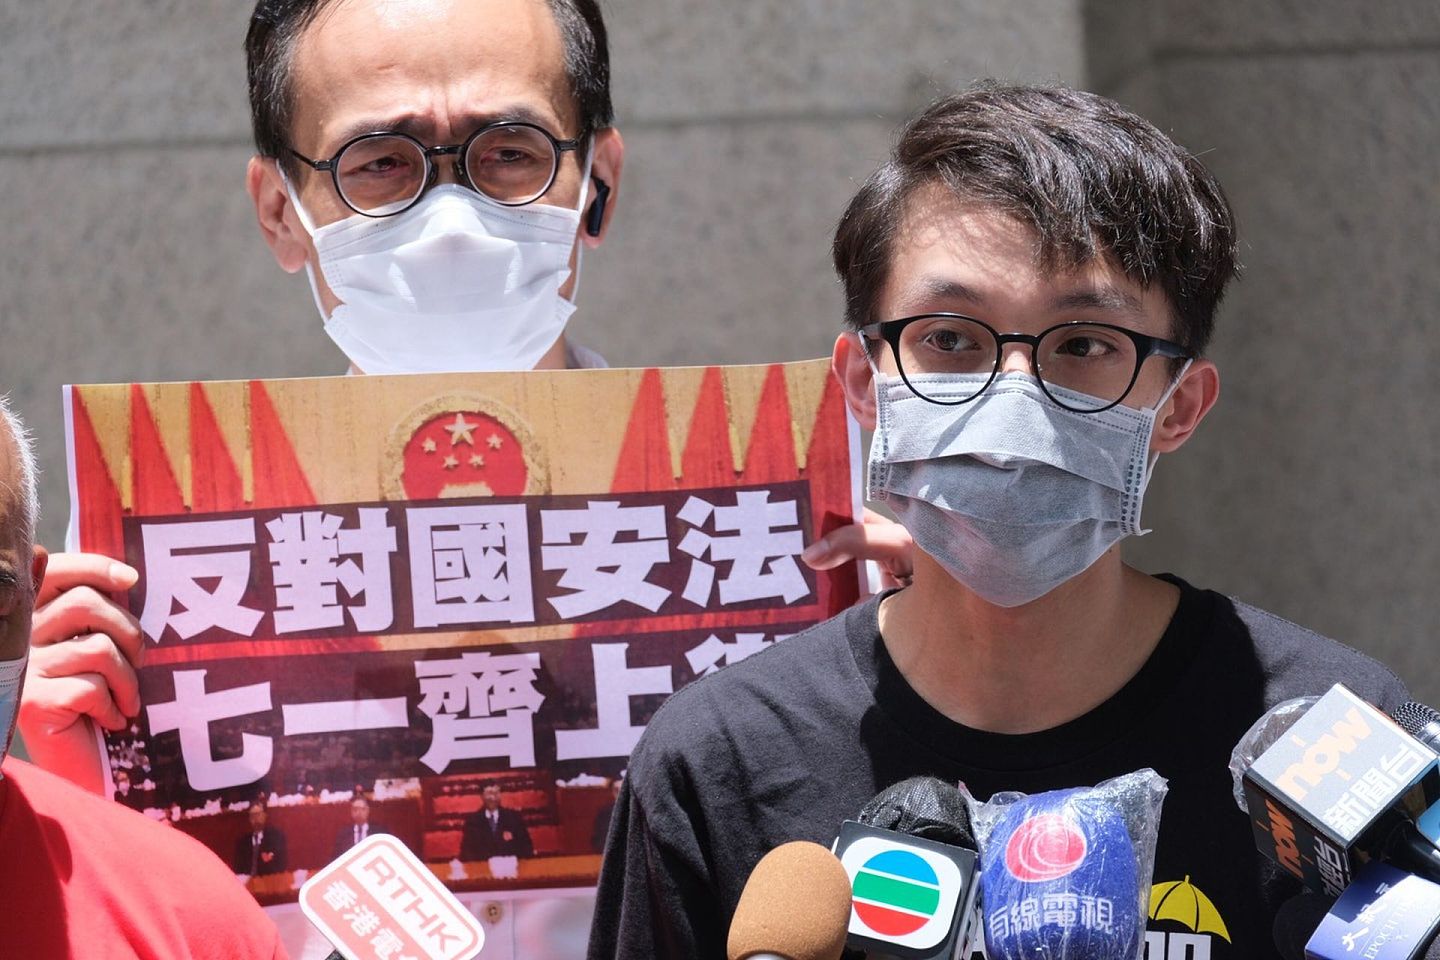 民阵及部分示威者仍以“反国安法”为名，号召示威者在7月1日“上街”示威。(HK01)